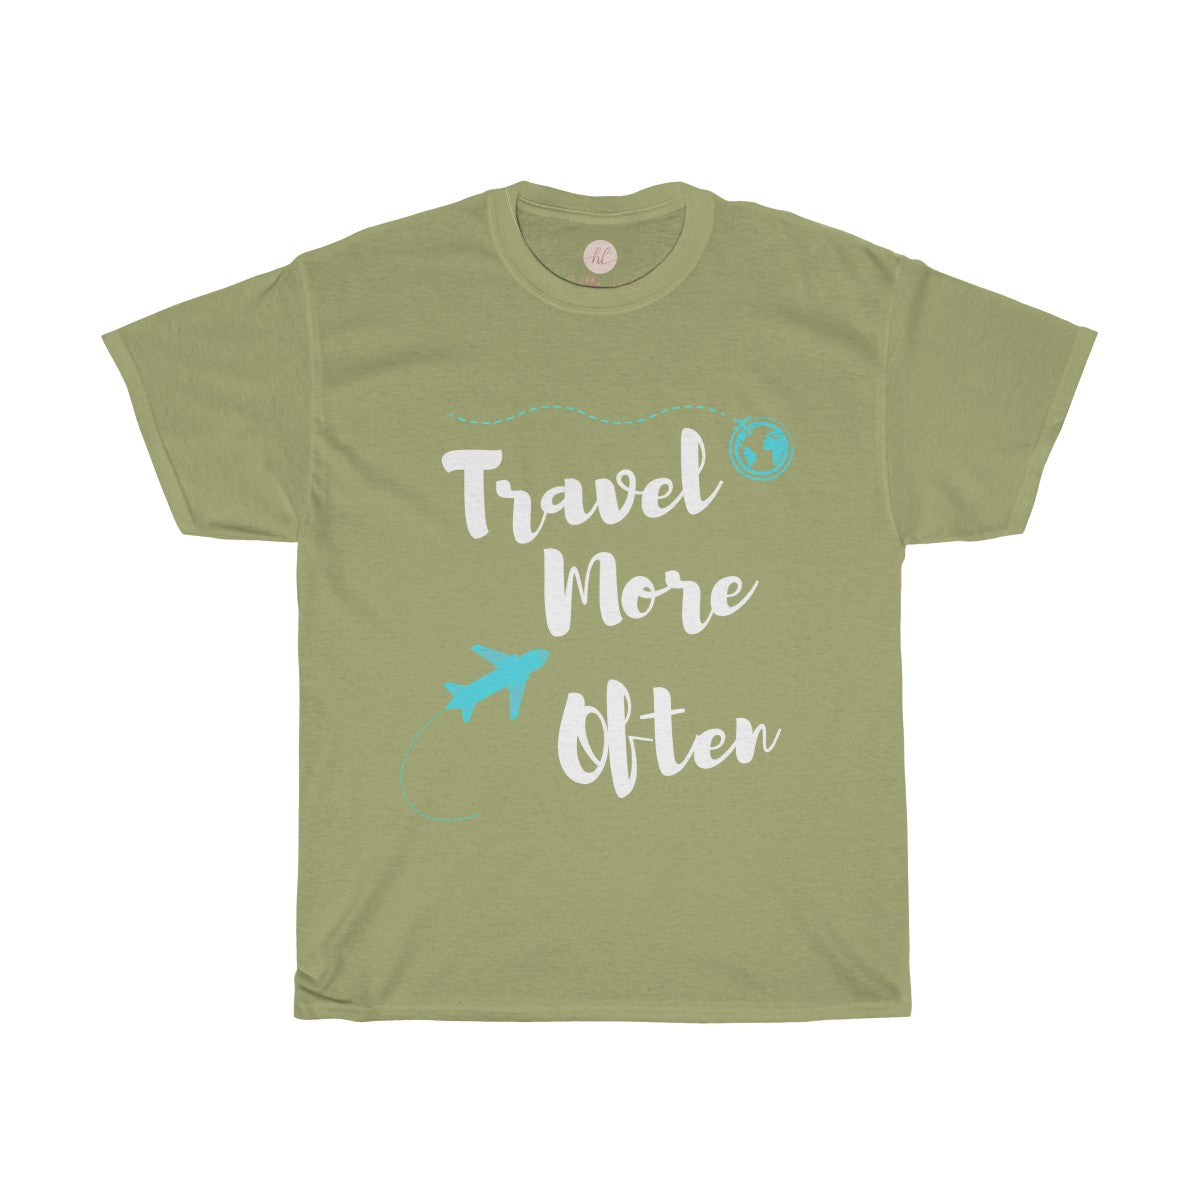 Travel More Often Tee| Travel More Often T-Shirt